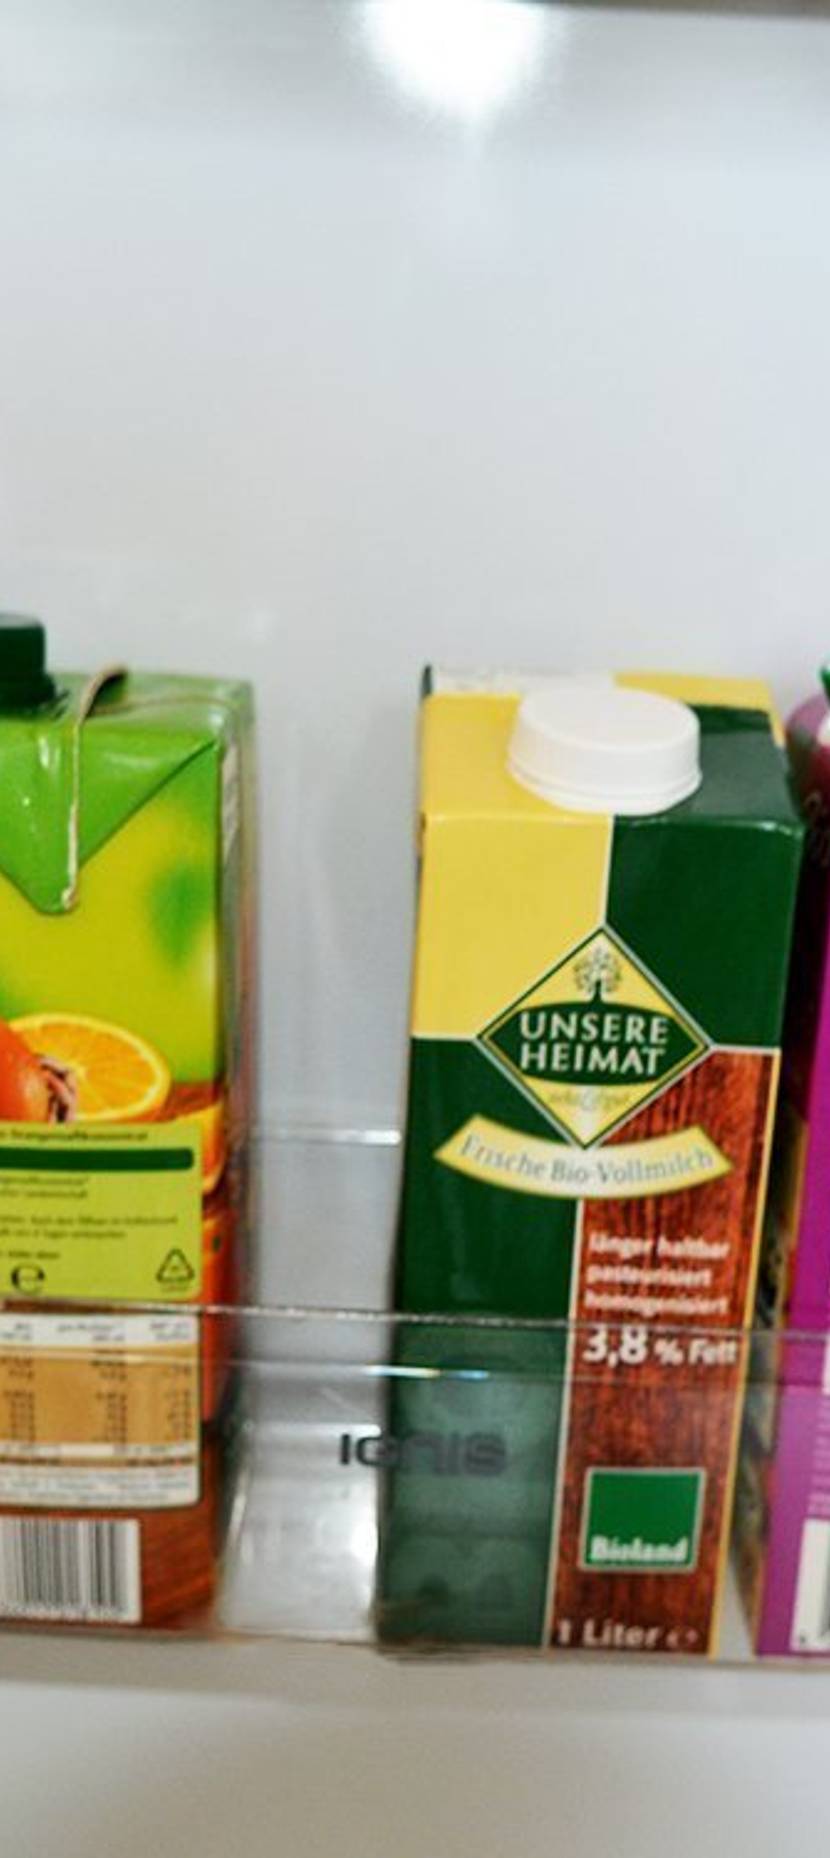 Angebrochene Getränke stehen in der Kühlschrank-Tür sicher.